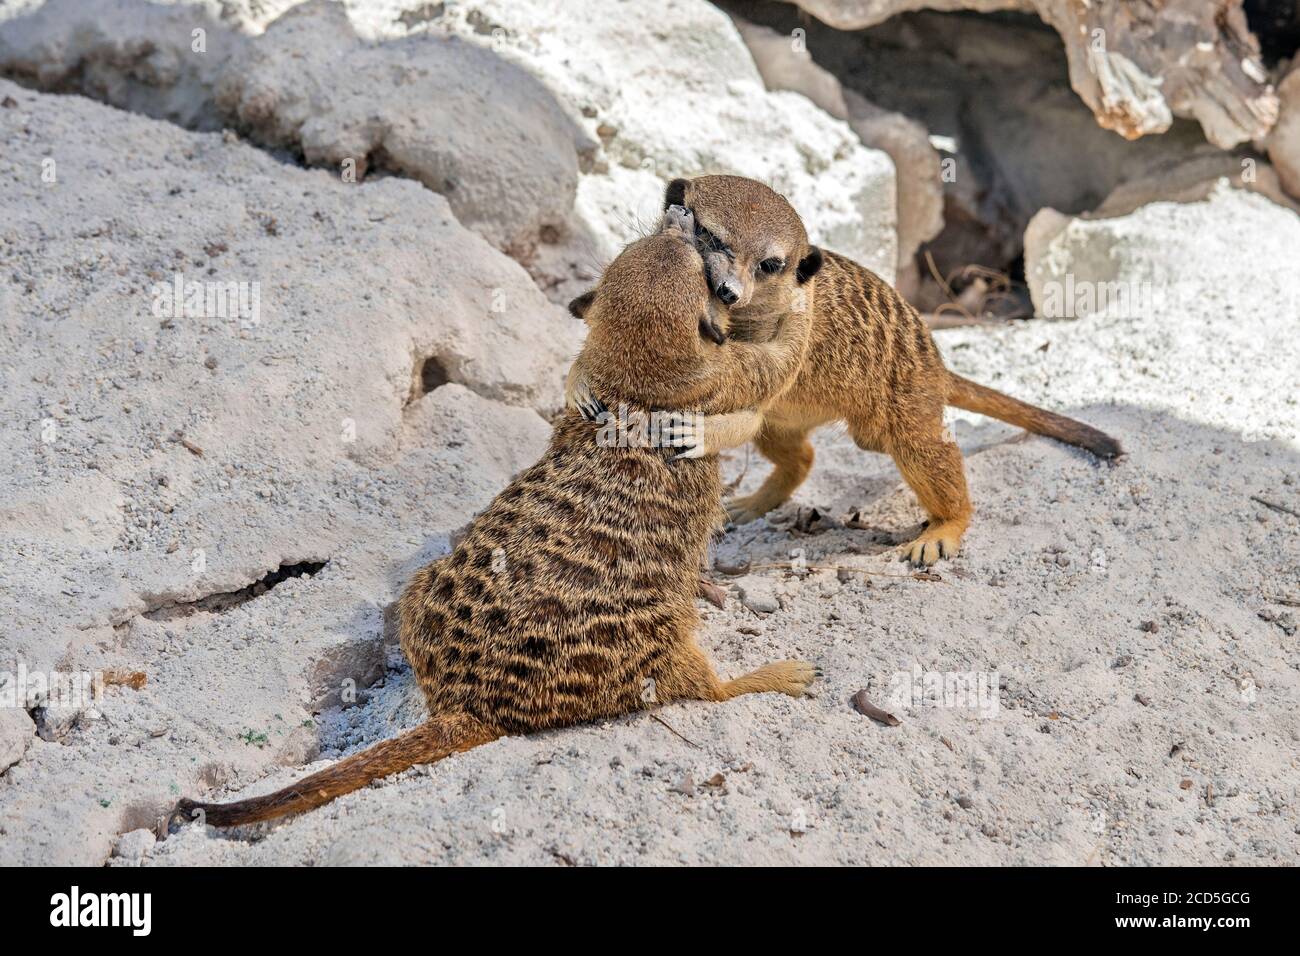 Les suricates (ou «meercats» - Suricata suricata) dans le parc Amazonas, municipalité d'Agios Nikolaos, Crète, Grèce. Banque D'Images